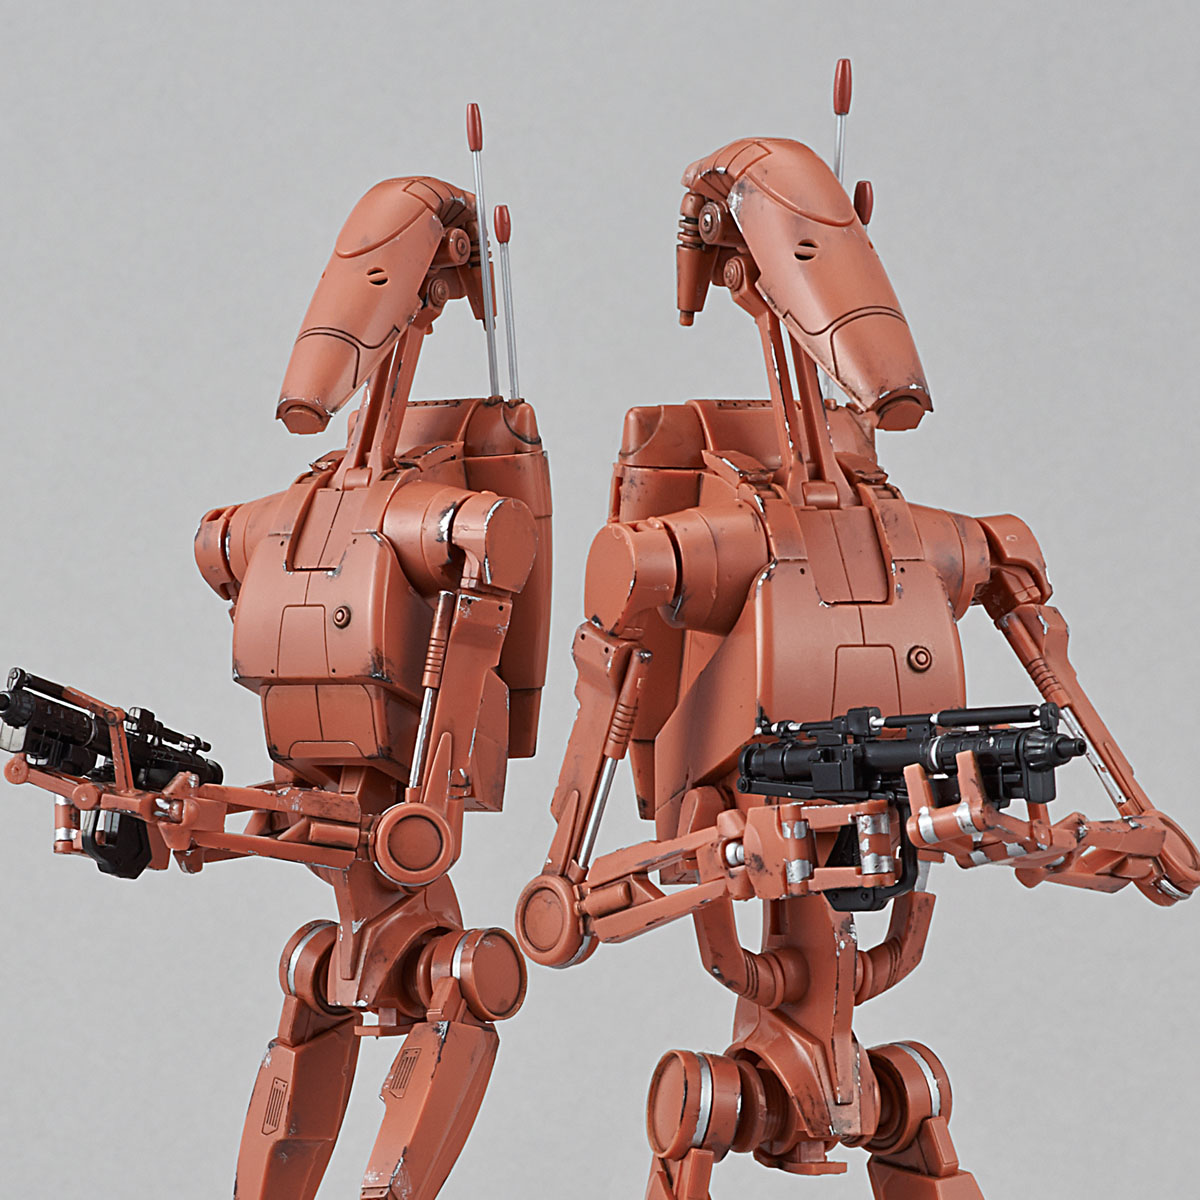 bandai battle droid model kit